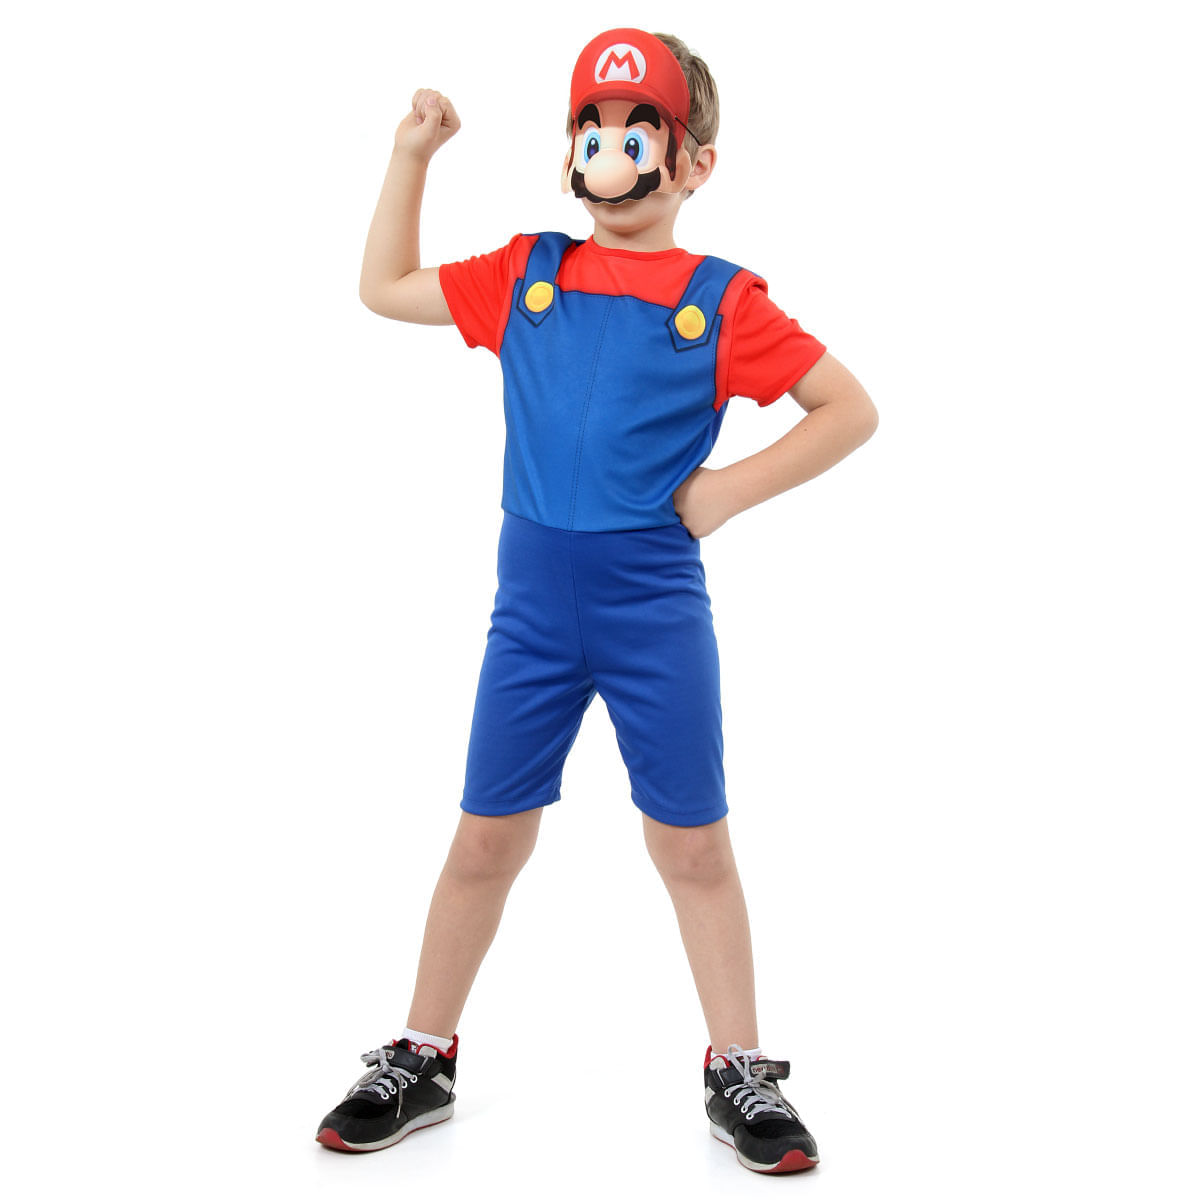 Fantasia Mario Bros Infantil - Super Pop - Super Mario World - Original P / UNICA